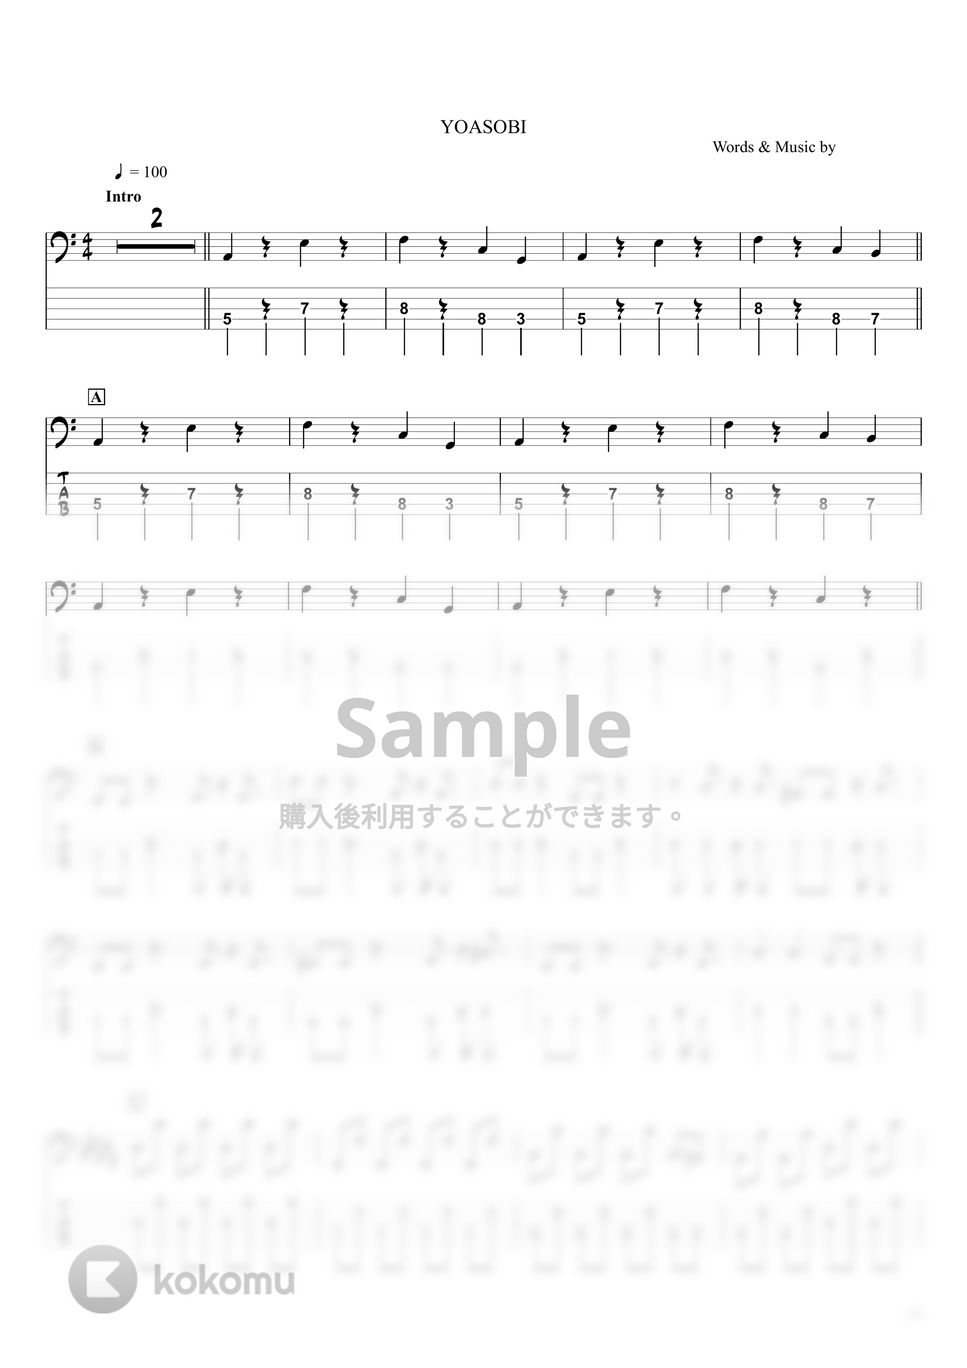 YOASOBI - ハルカ (ベースTAB譜 / ☆5弦ベース対応) by swbass